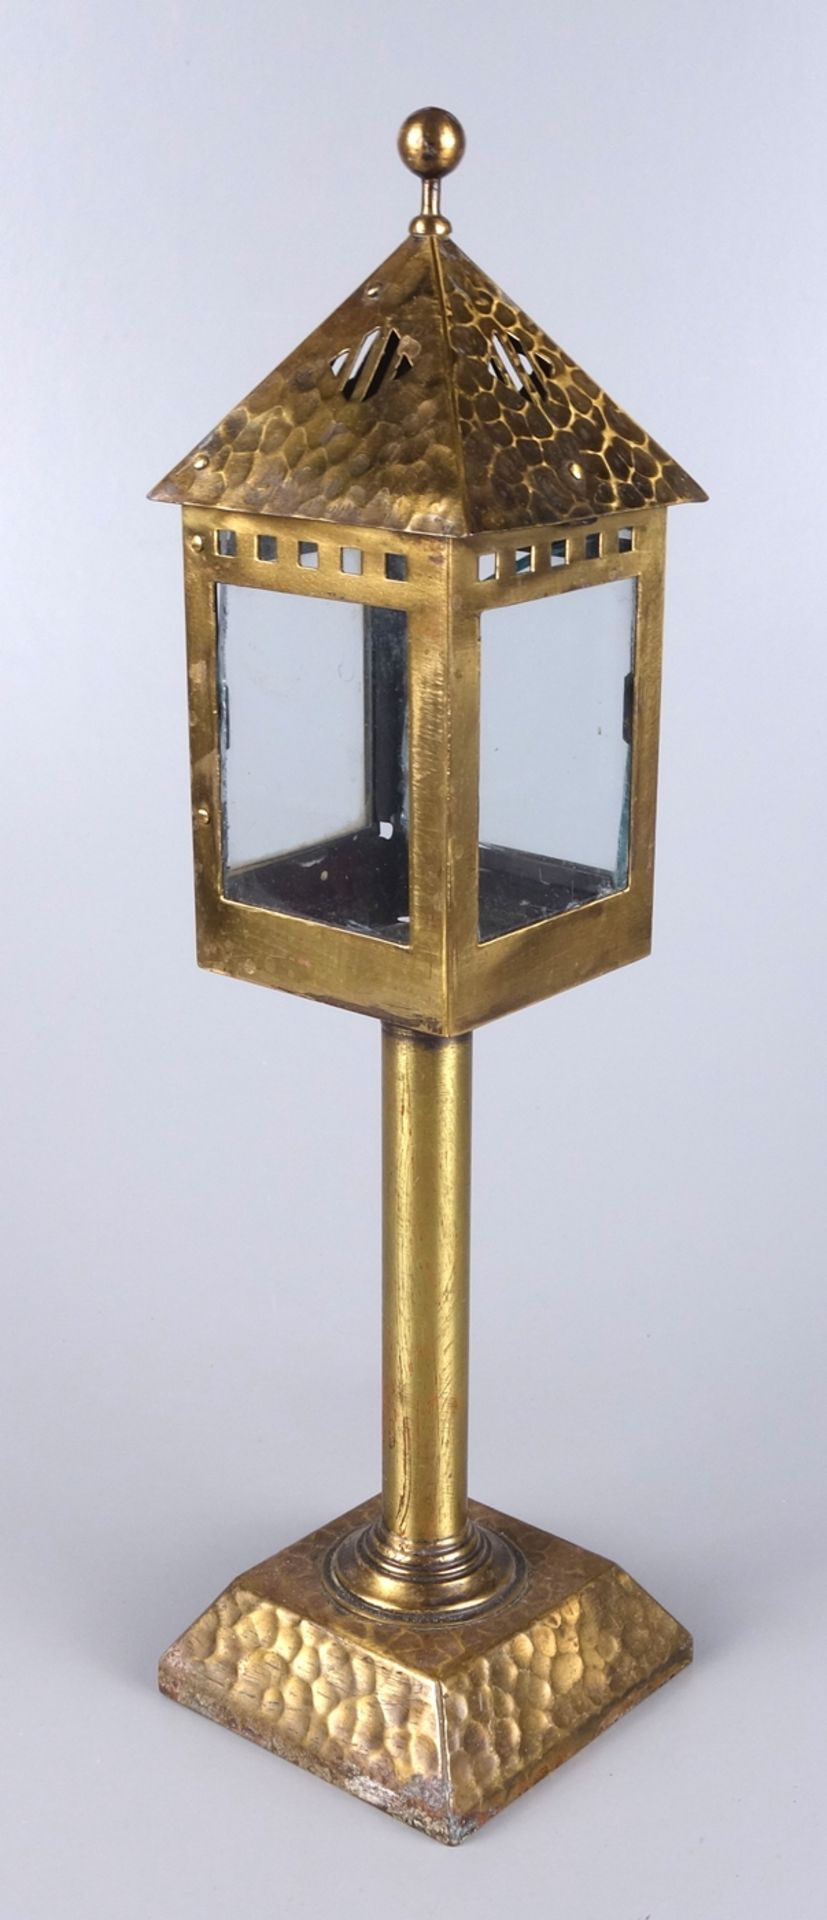 Windlicht/ Kerzenhalter, Messing mit Hammerschlag, 1920er Jahre, zylindrischer